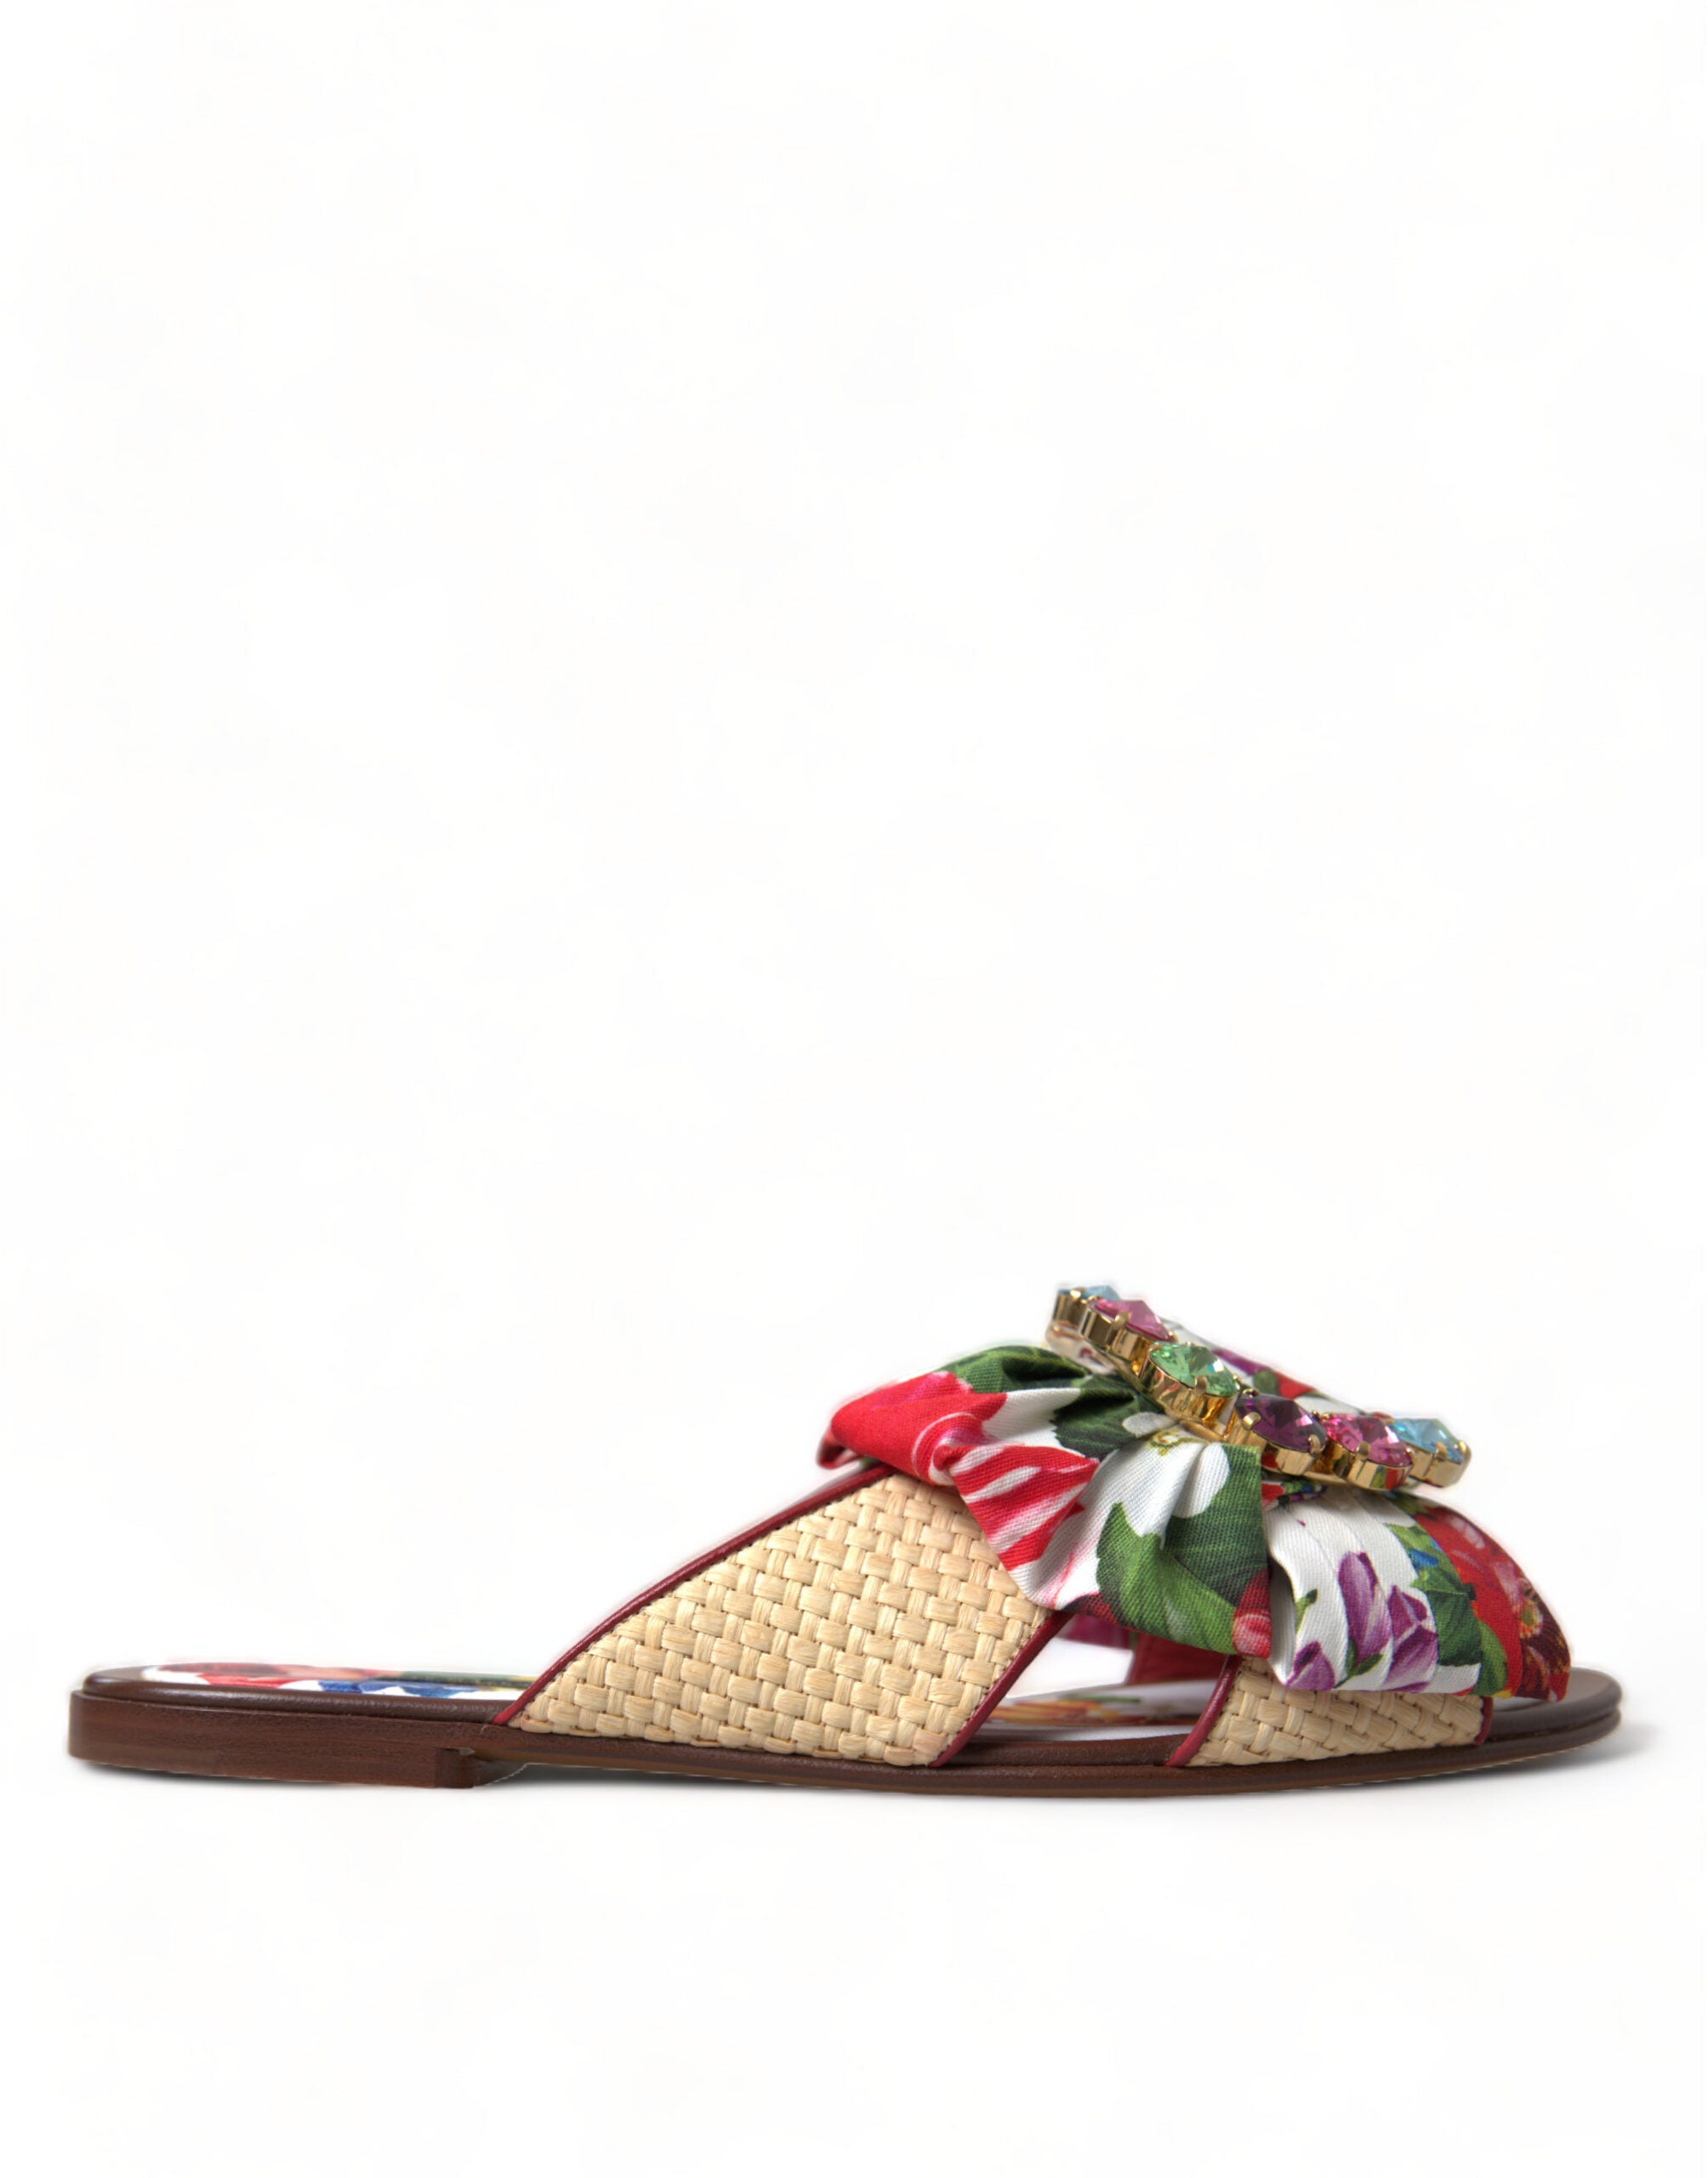 Exquisite Floral Print Flat Sandals - Divitiae Glamour